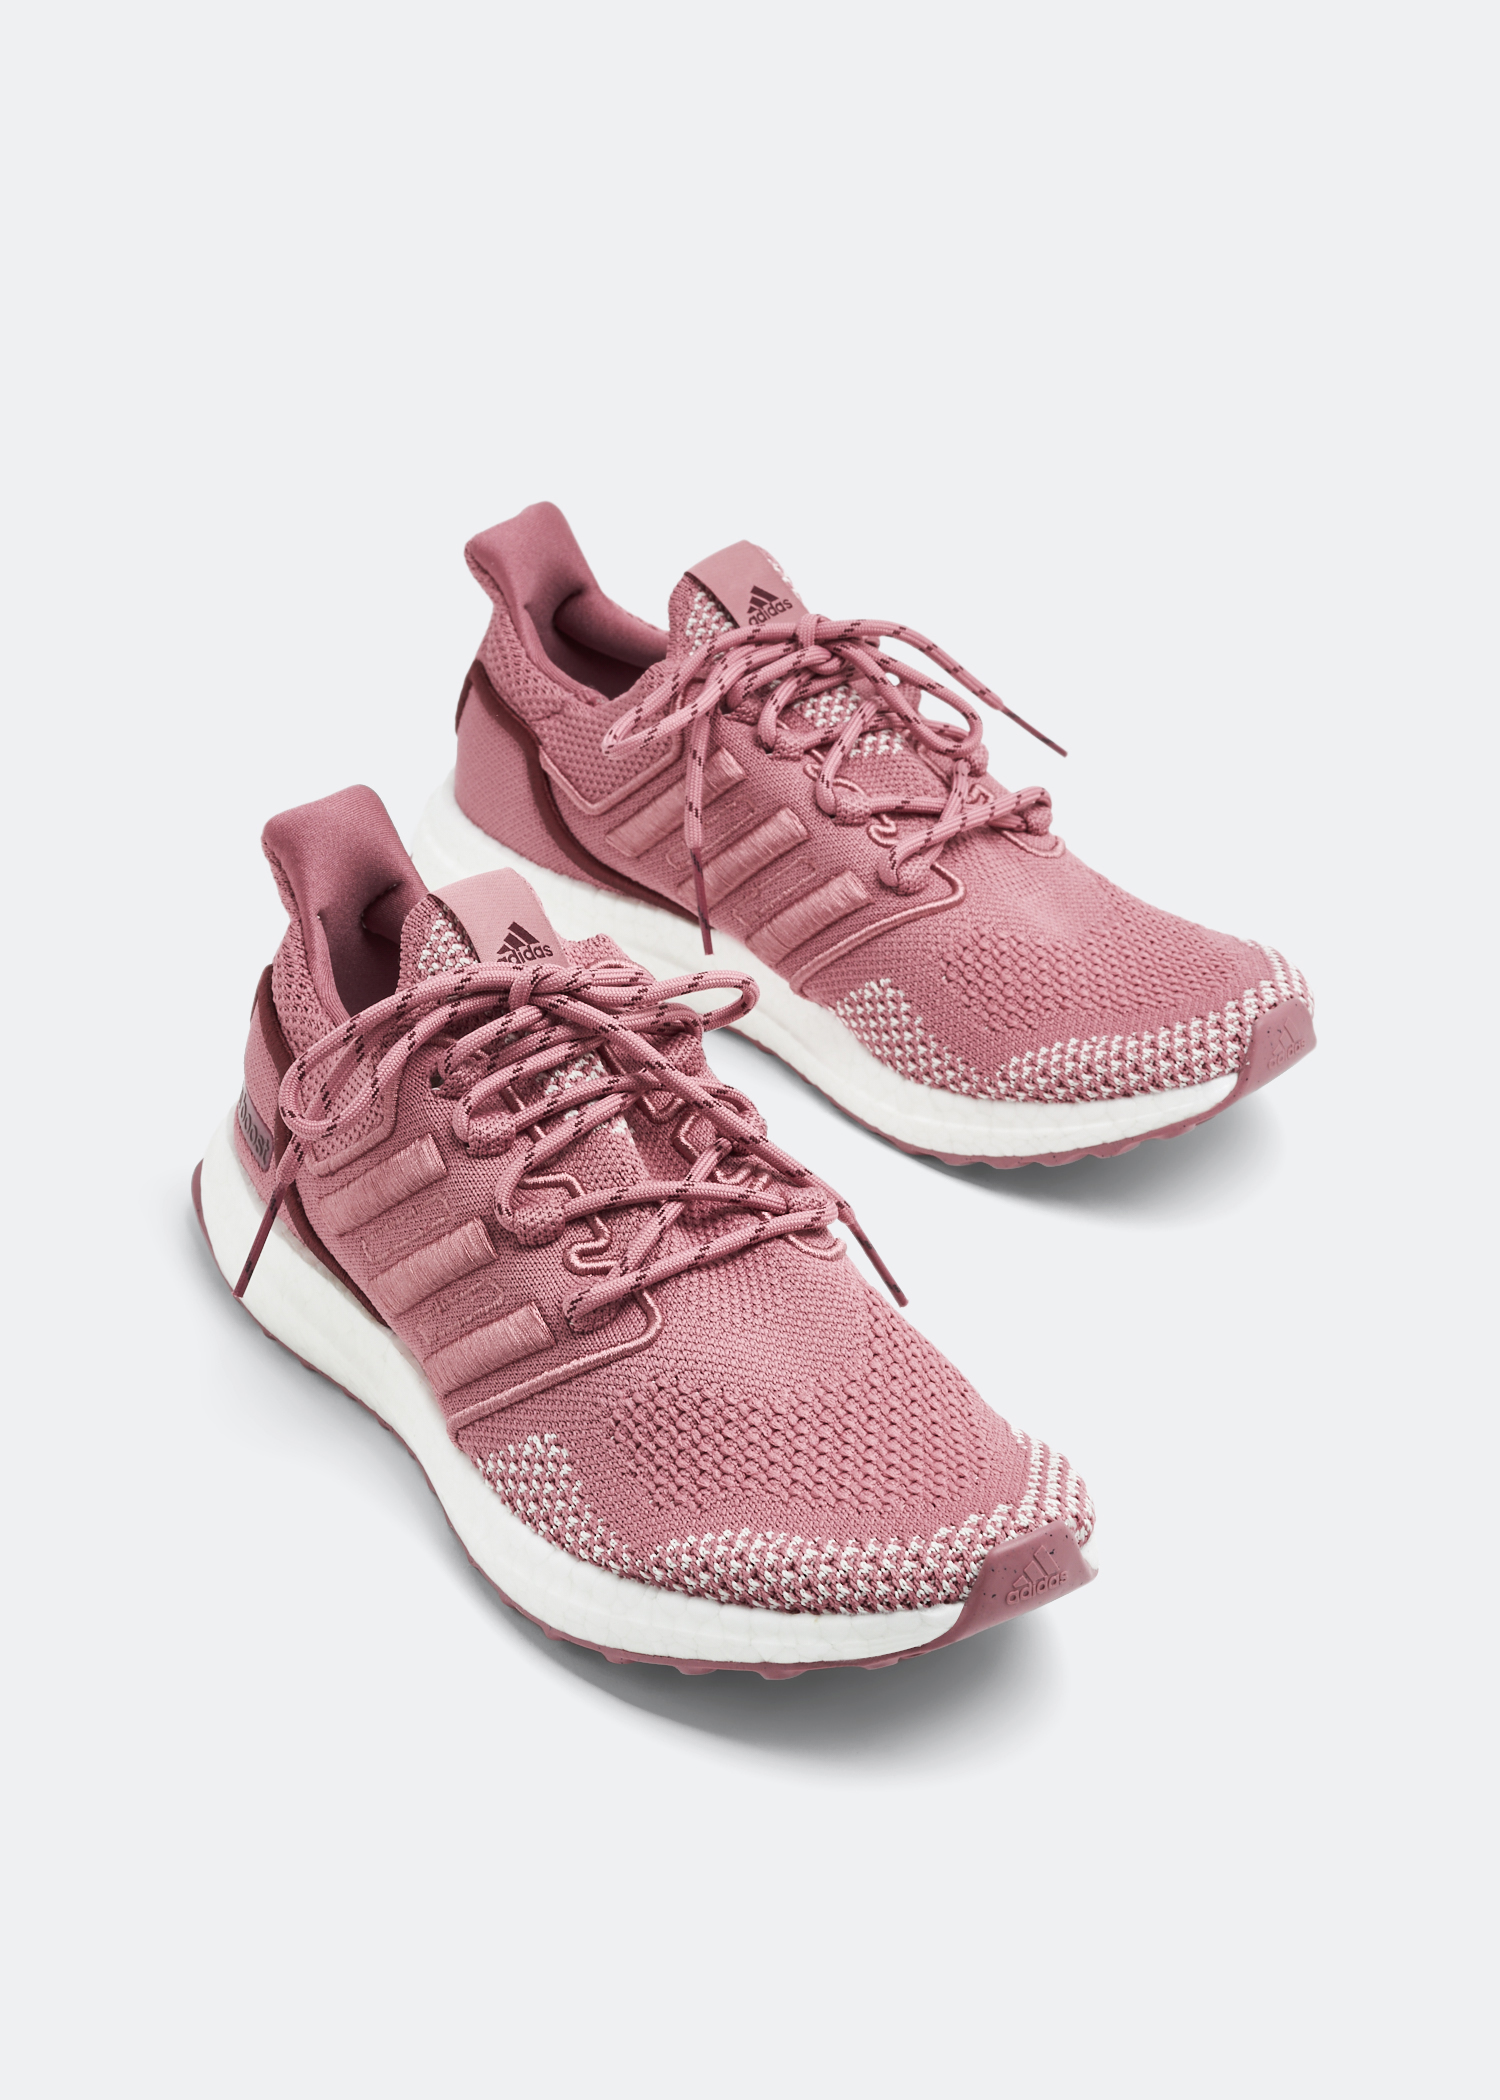 Adidas Ultraboost 1.0 LCFP sneakers for Women - Pink in KSA 